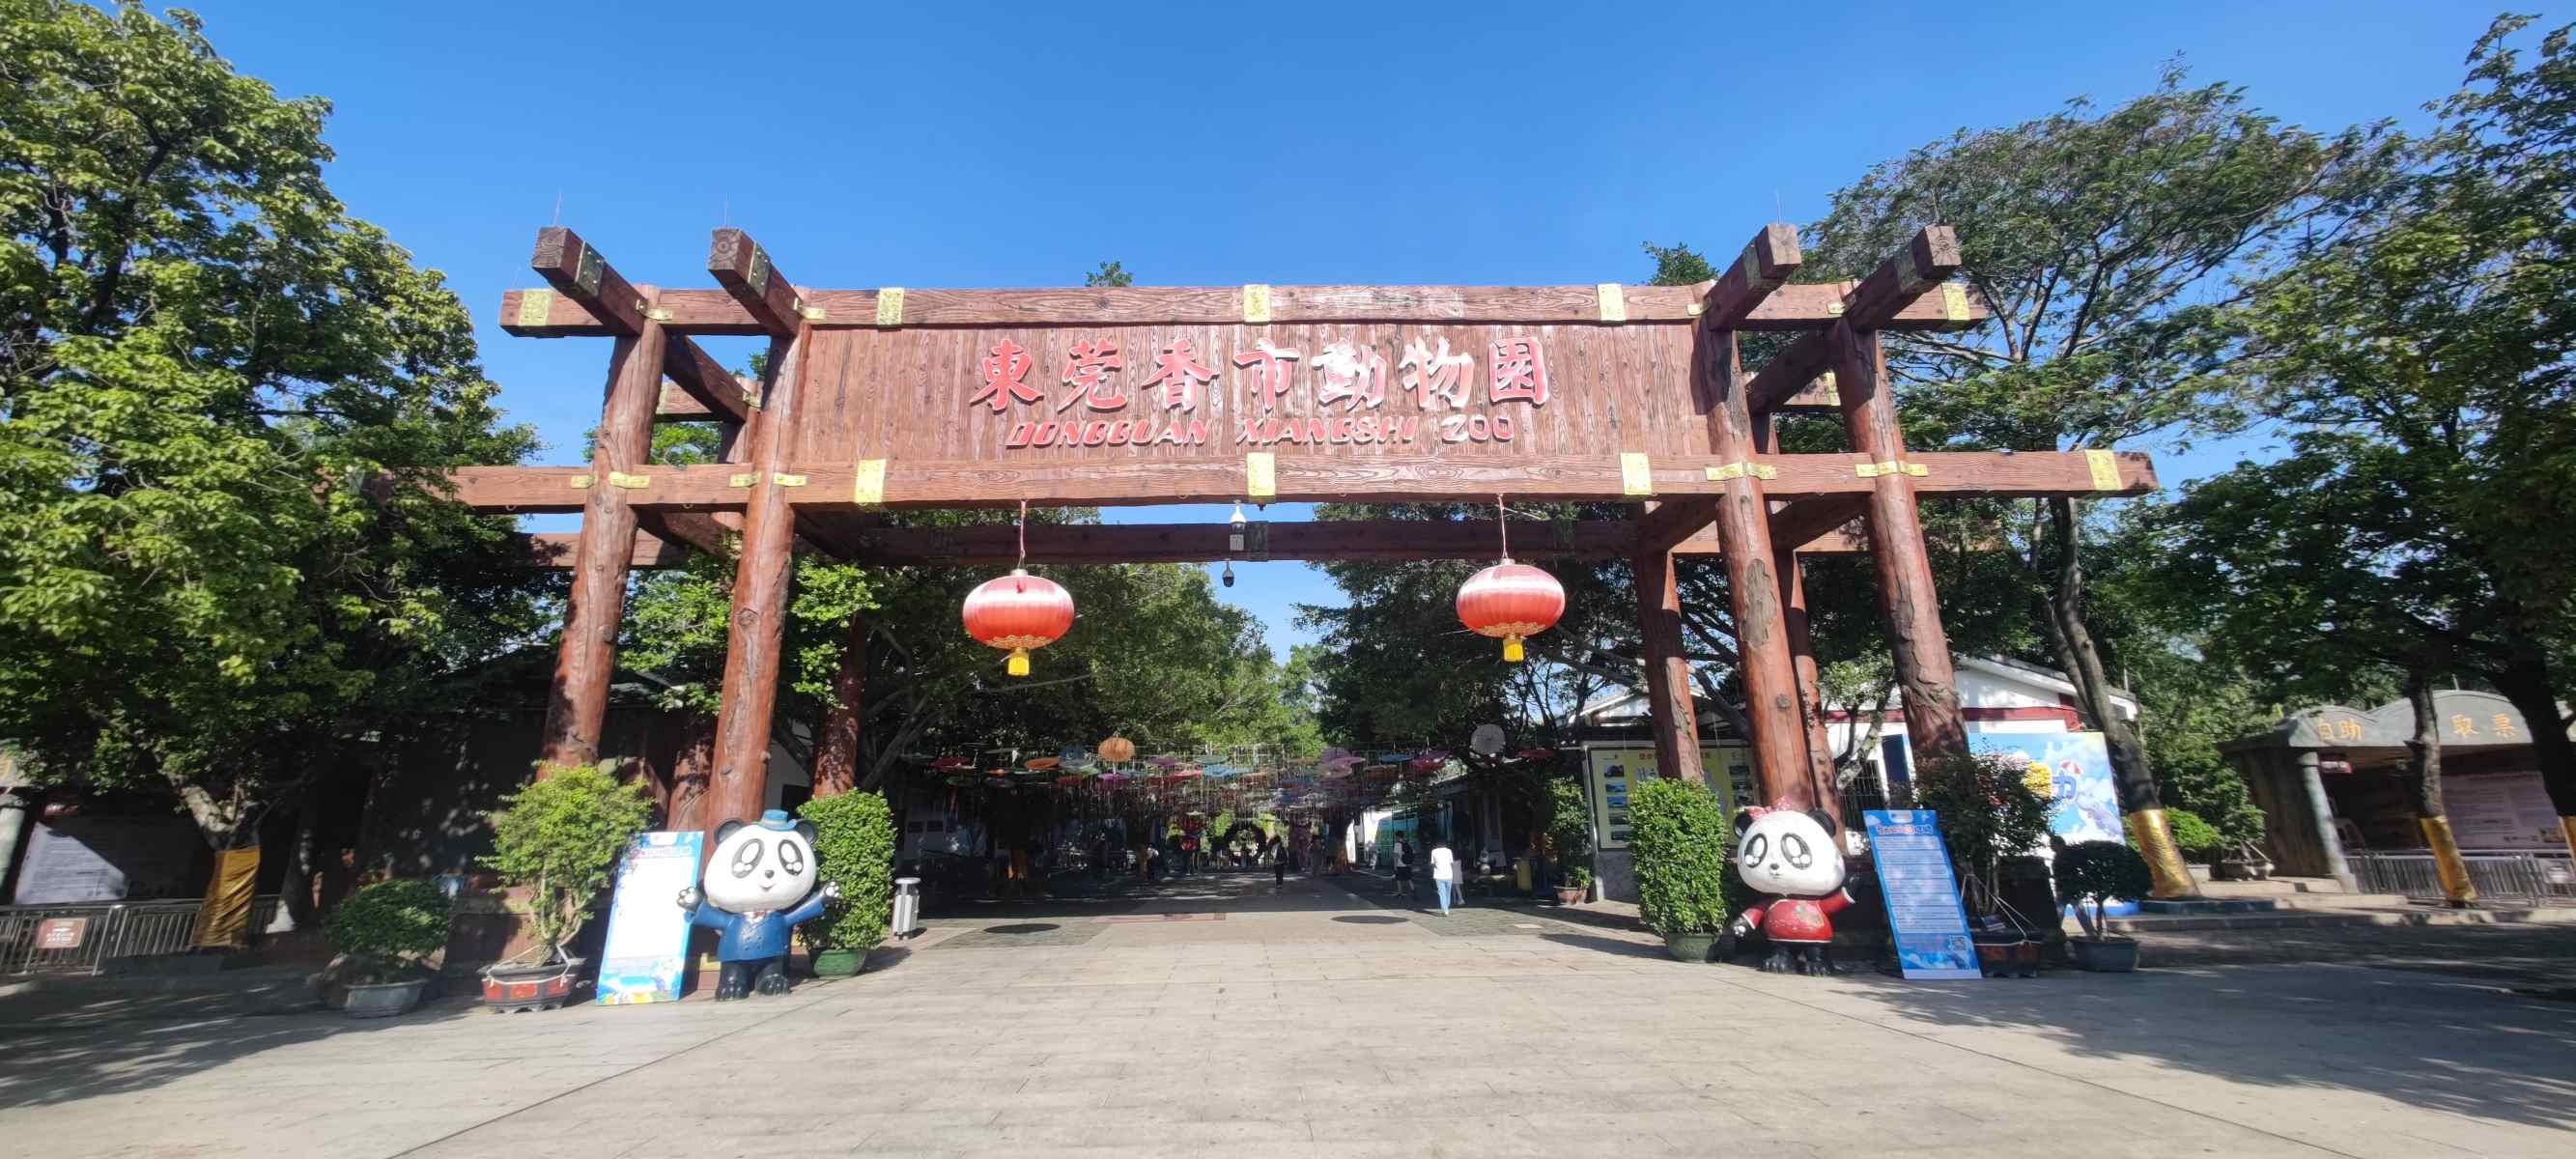 15-enigmatic-facts-about-dongguan-xiangshi-zoo